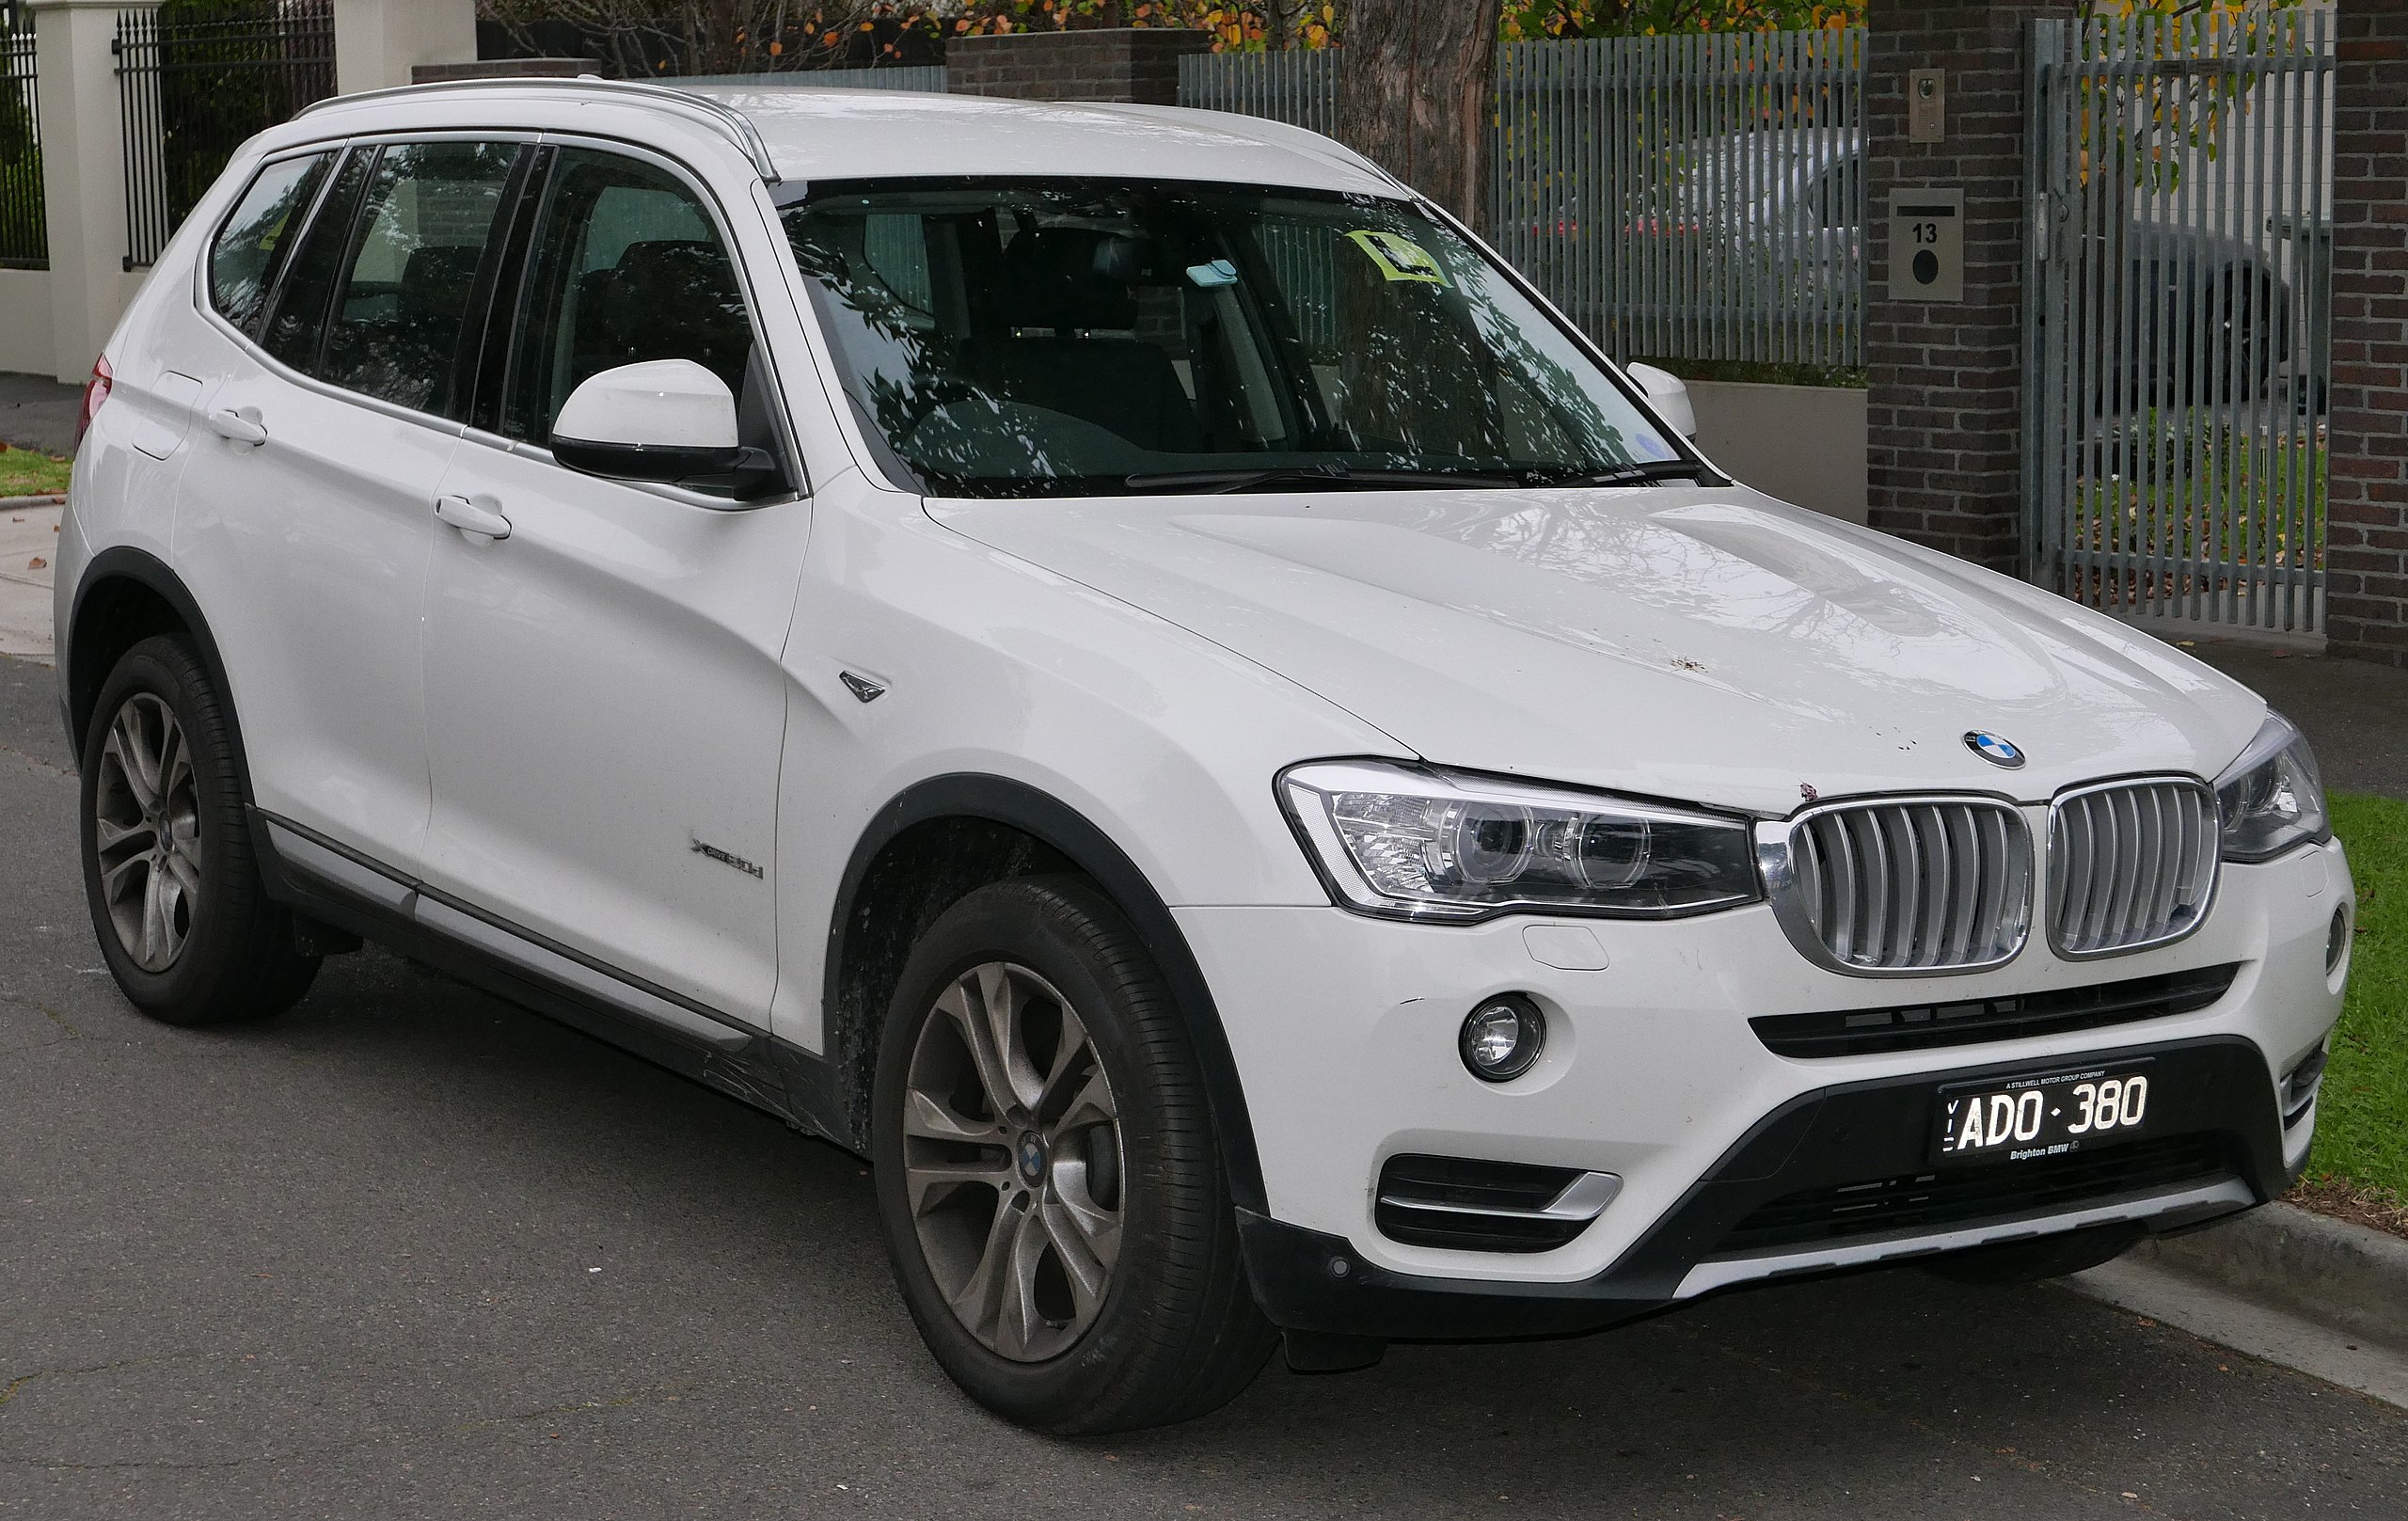 File:2015 BMW X3 (F25 LCI) xDrive20d wagon (2015-06-27).jpg - Wikipedia